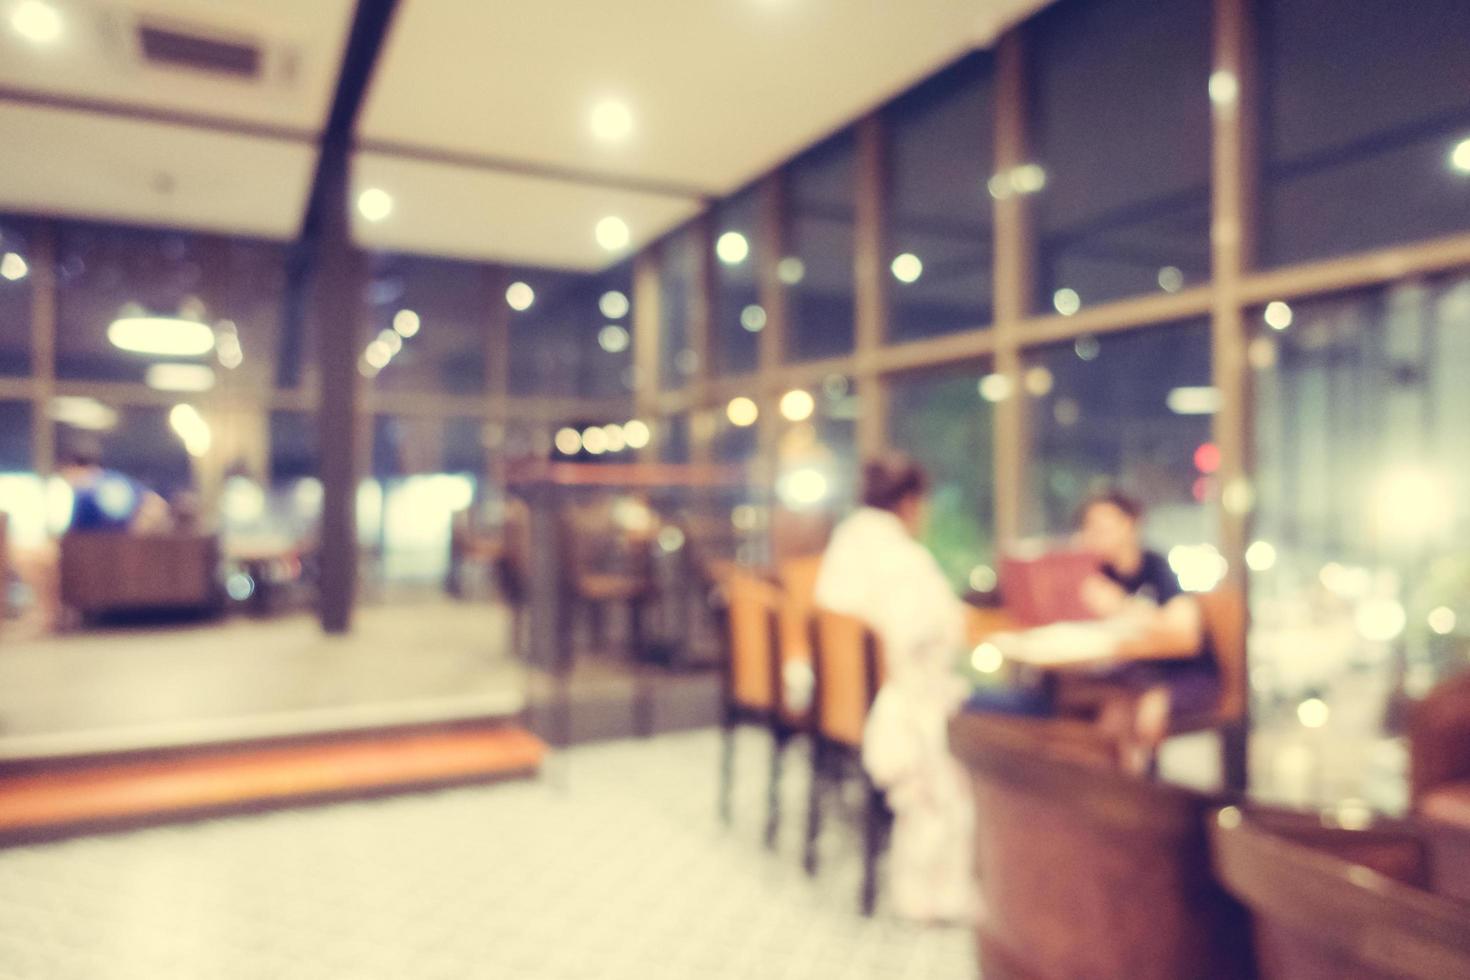 café et restaurant flou abstrait photo